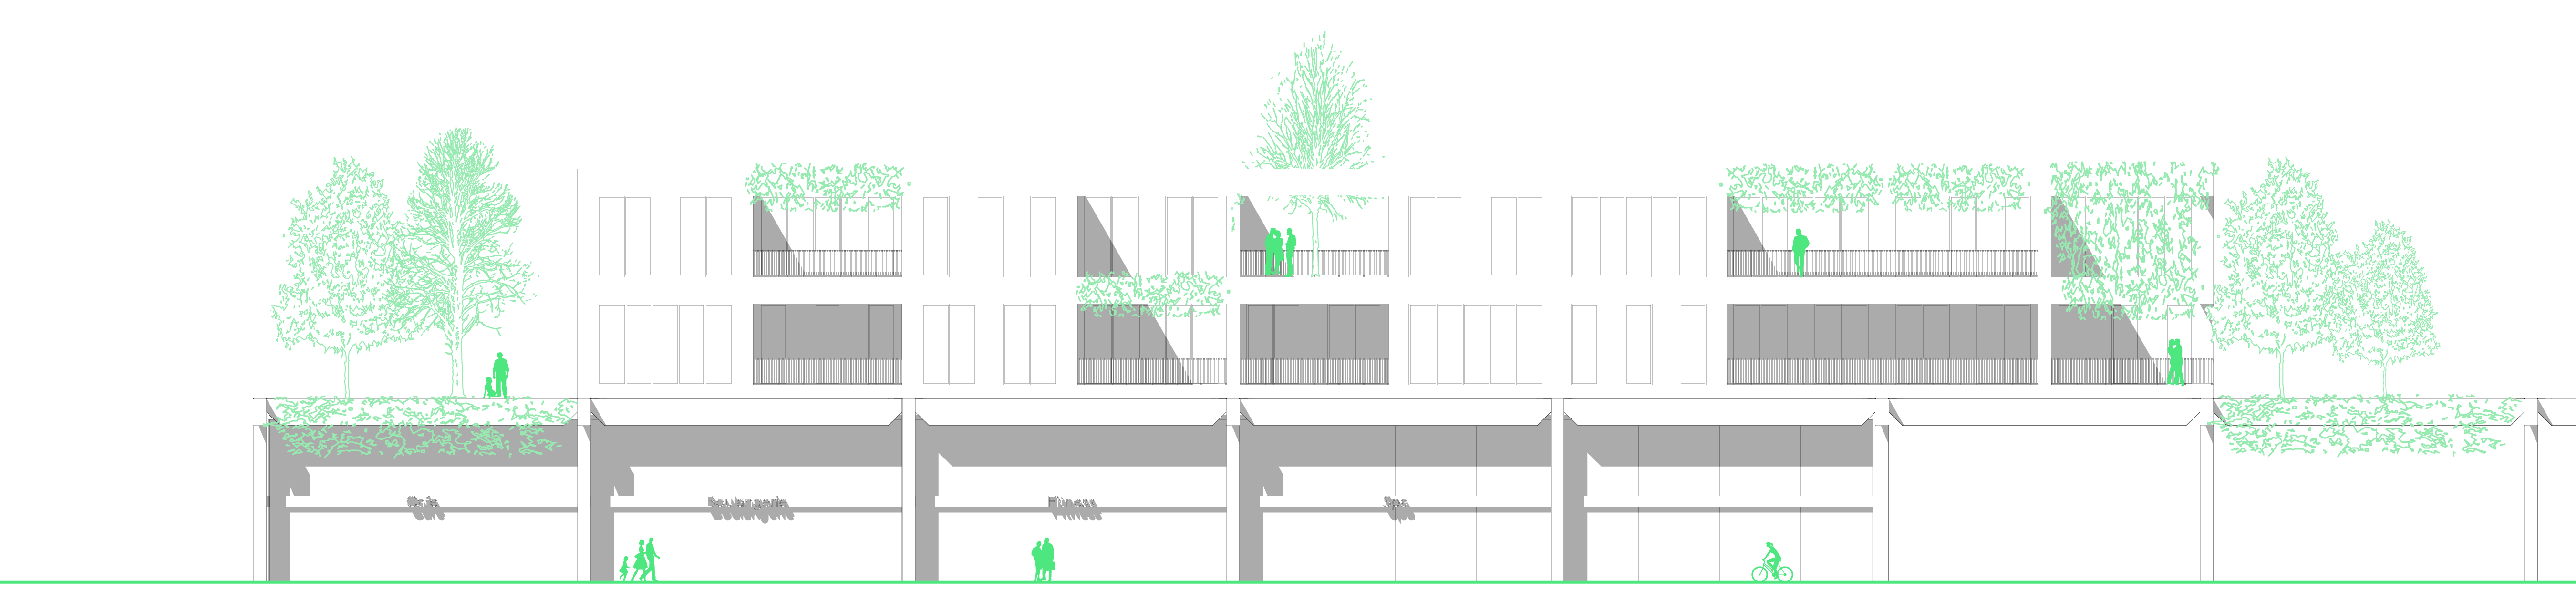 drüberbau: Vom Parkplatz zum Quartier der Zukunft – durch Überbauung von Parkplätzen und Gewerbeimmobilien. (indigo.)